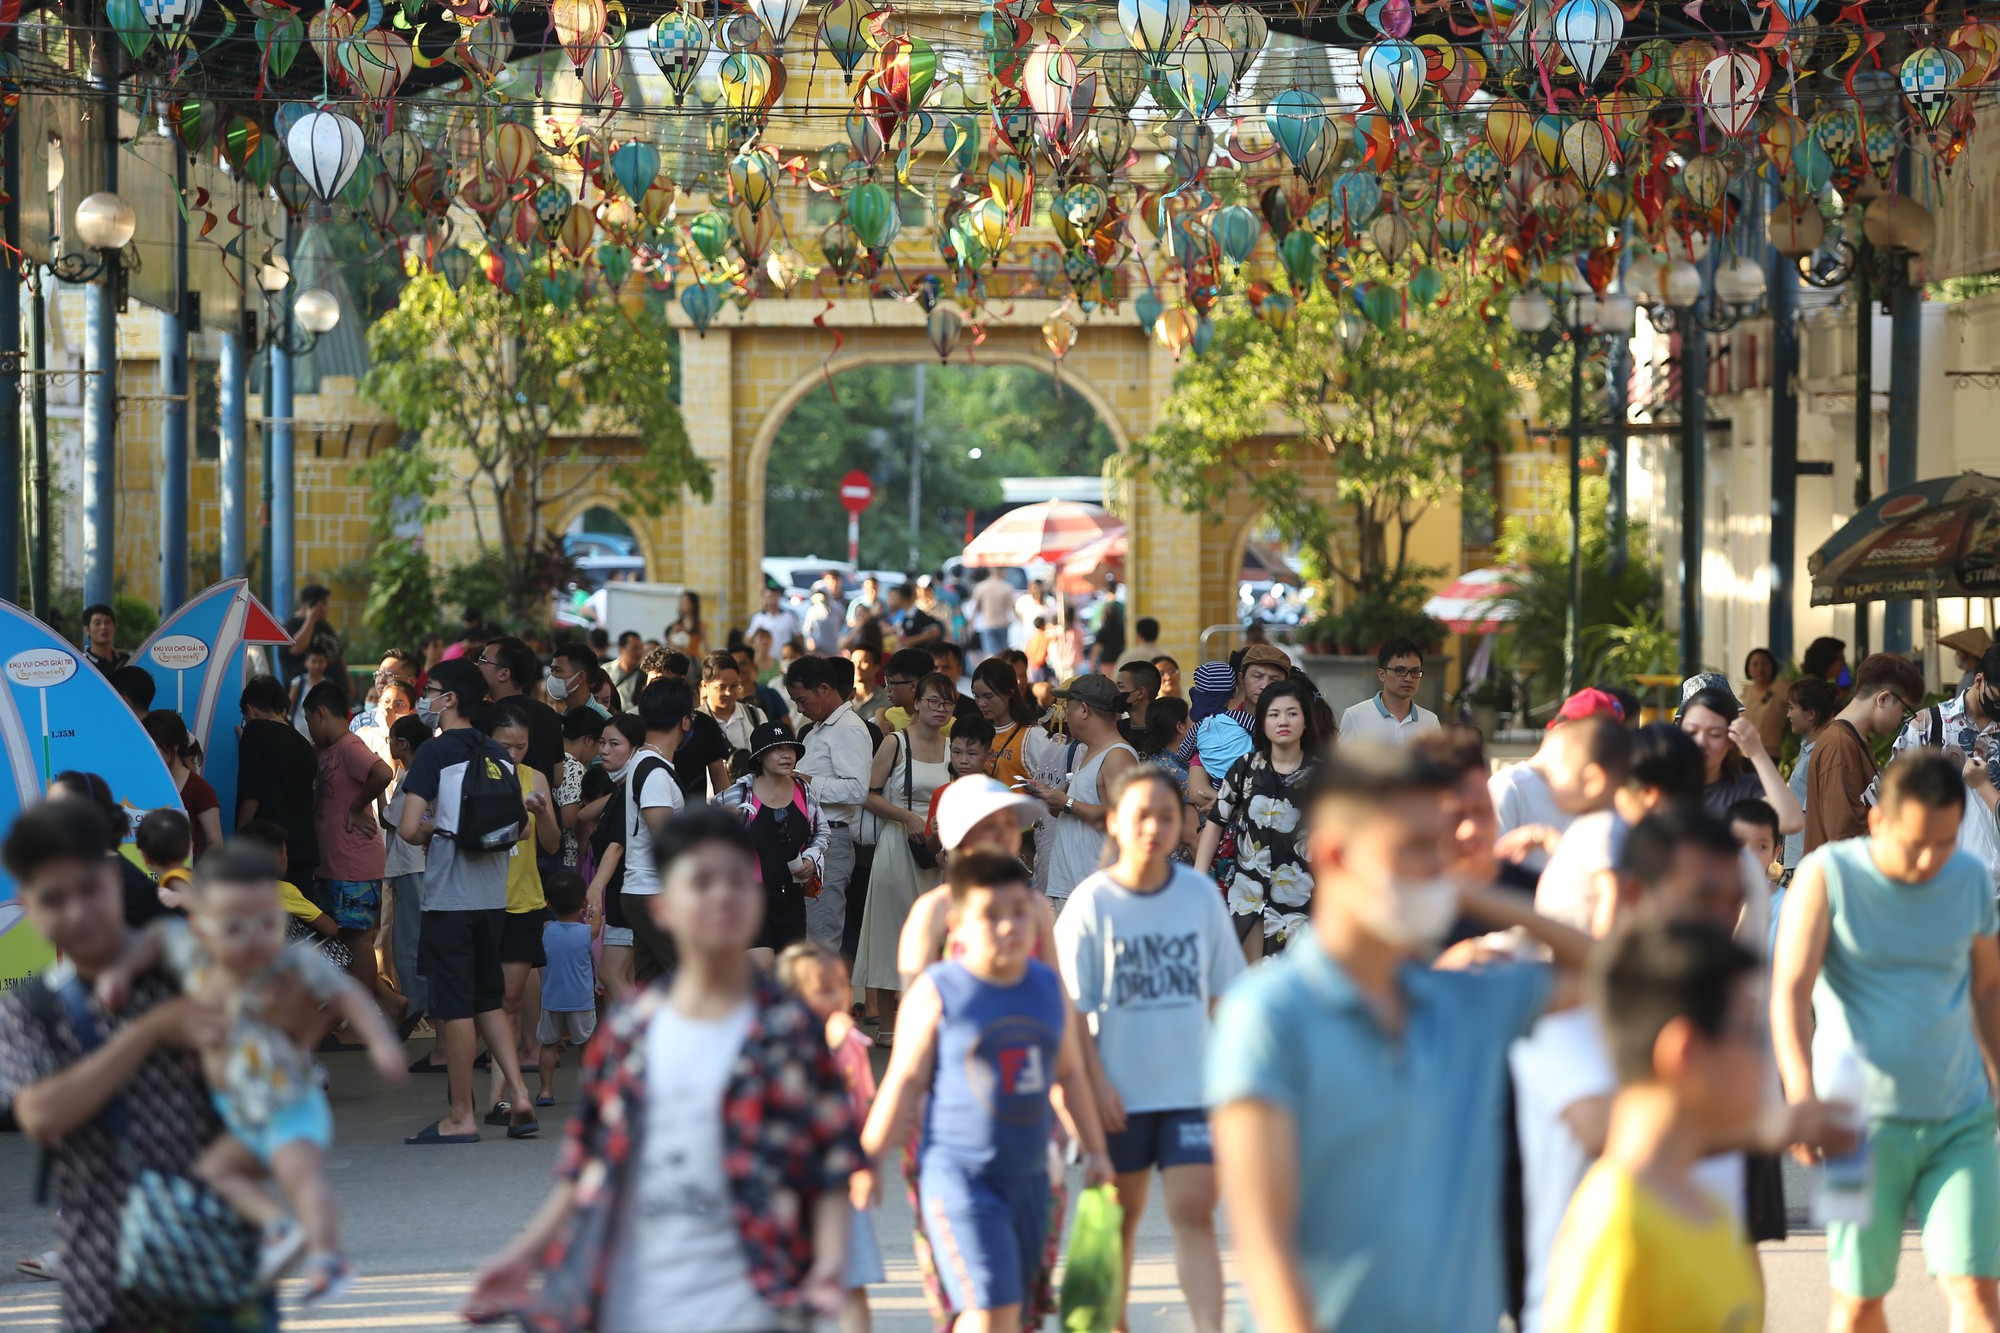 Hàng nghìn người đổ về Công viên nước vui chơi trong ngày nghỉ lễ Quốc khánh 2.9 - Ảnh 3.